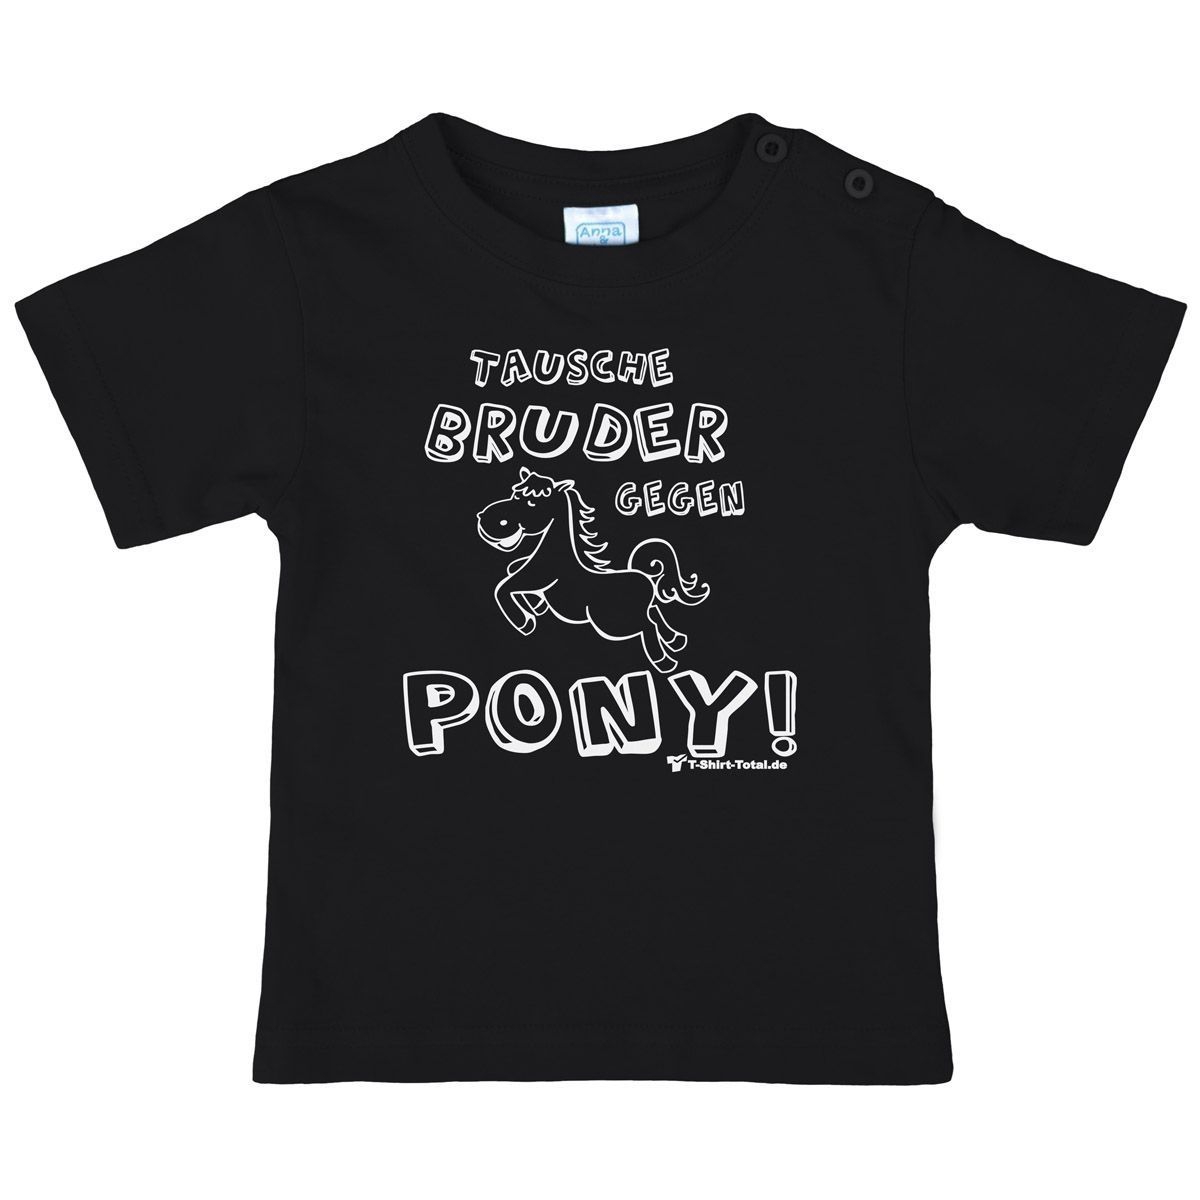 Tausche Bruder gegen Pony Kinder T-Shirt schwarz 80 / 86